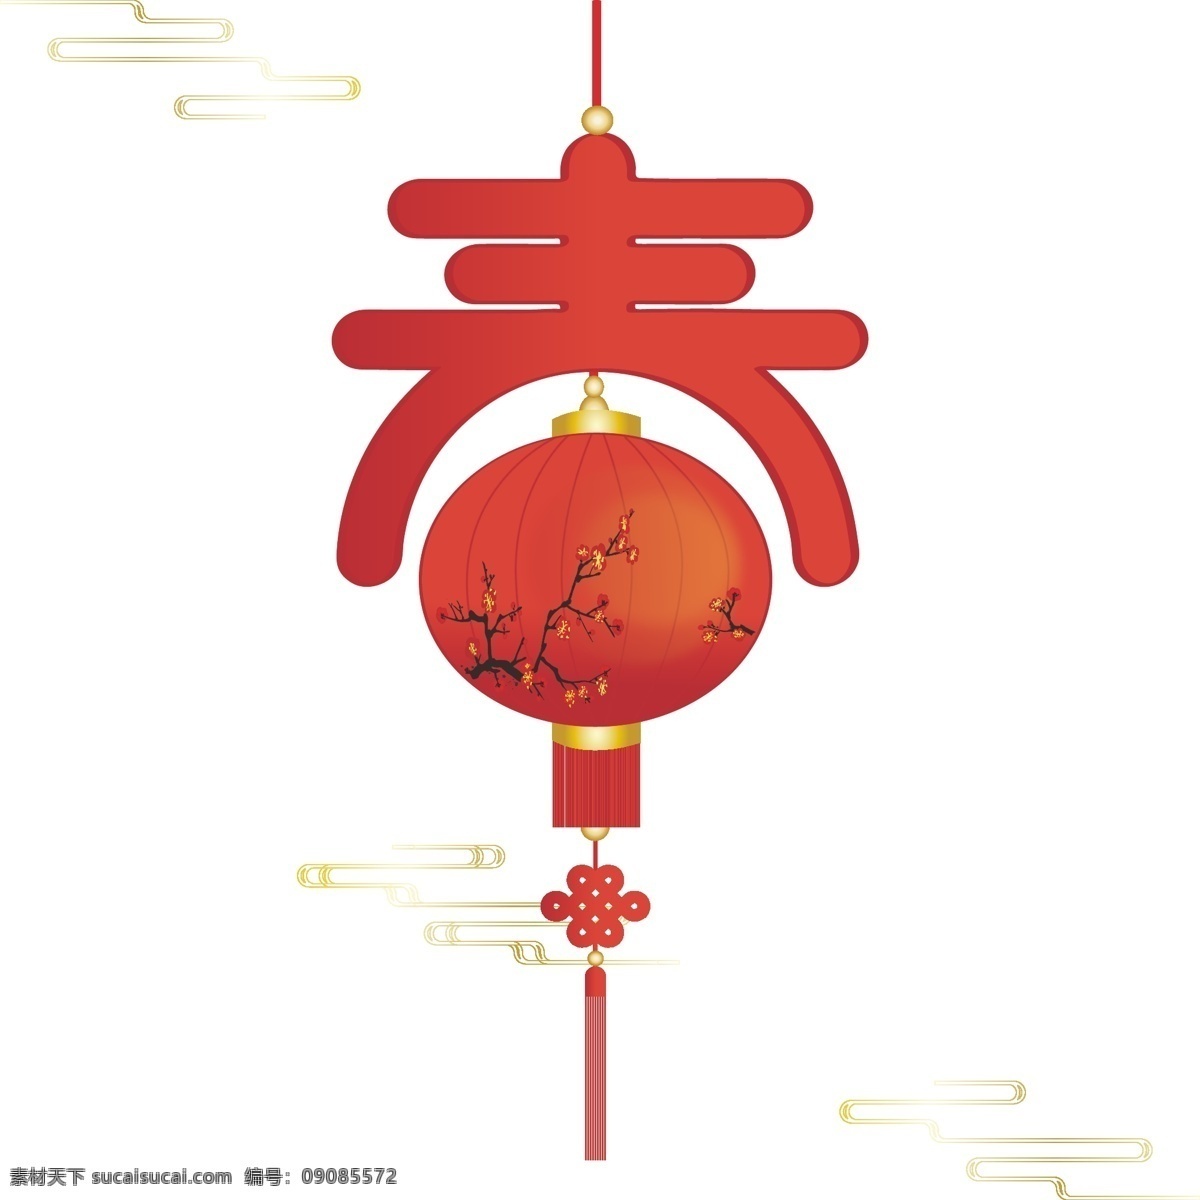 手绘 中国 风 春节 节日 喜庆 梅花 灯笼 装饰 元素 中国风